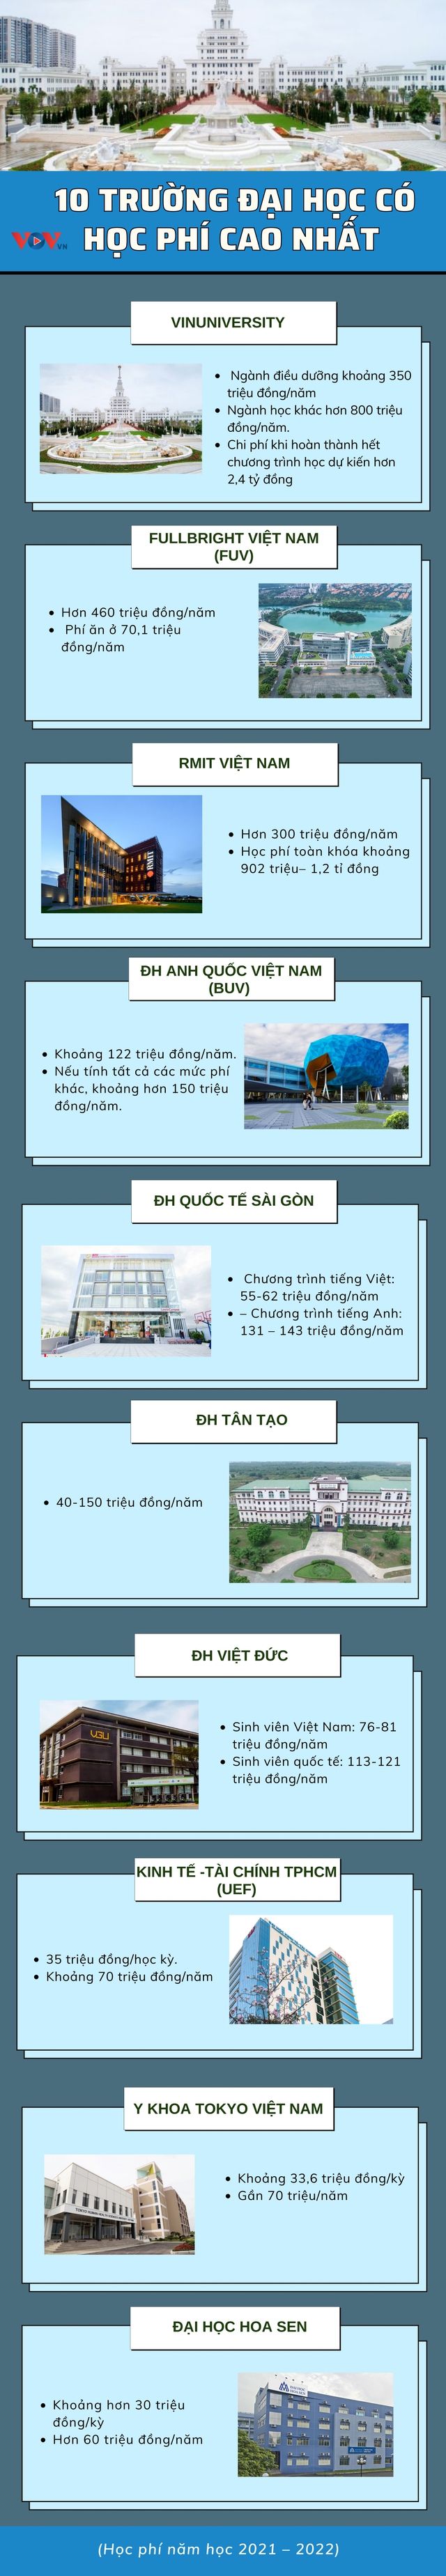 Điểm danh 10 trường đại học có học phí cao ở Việt Nam - Ảnh 1.